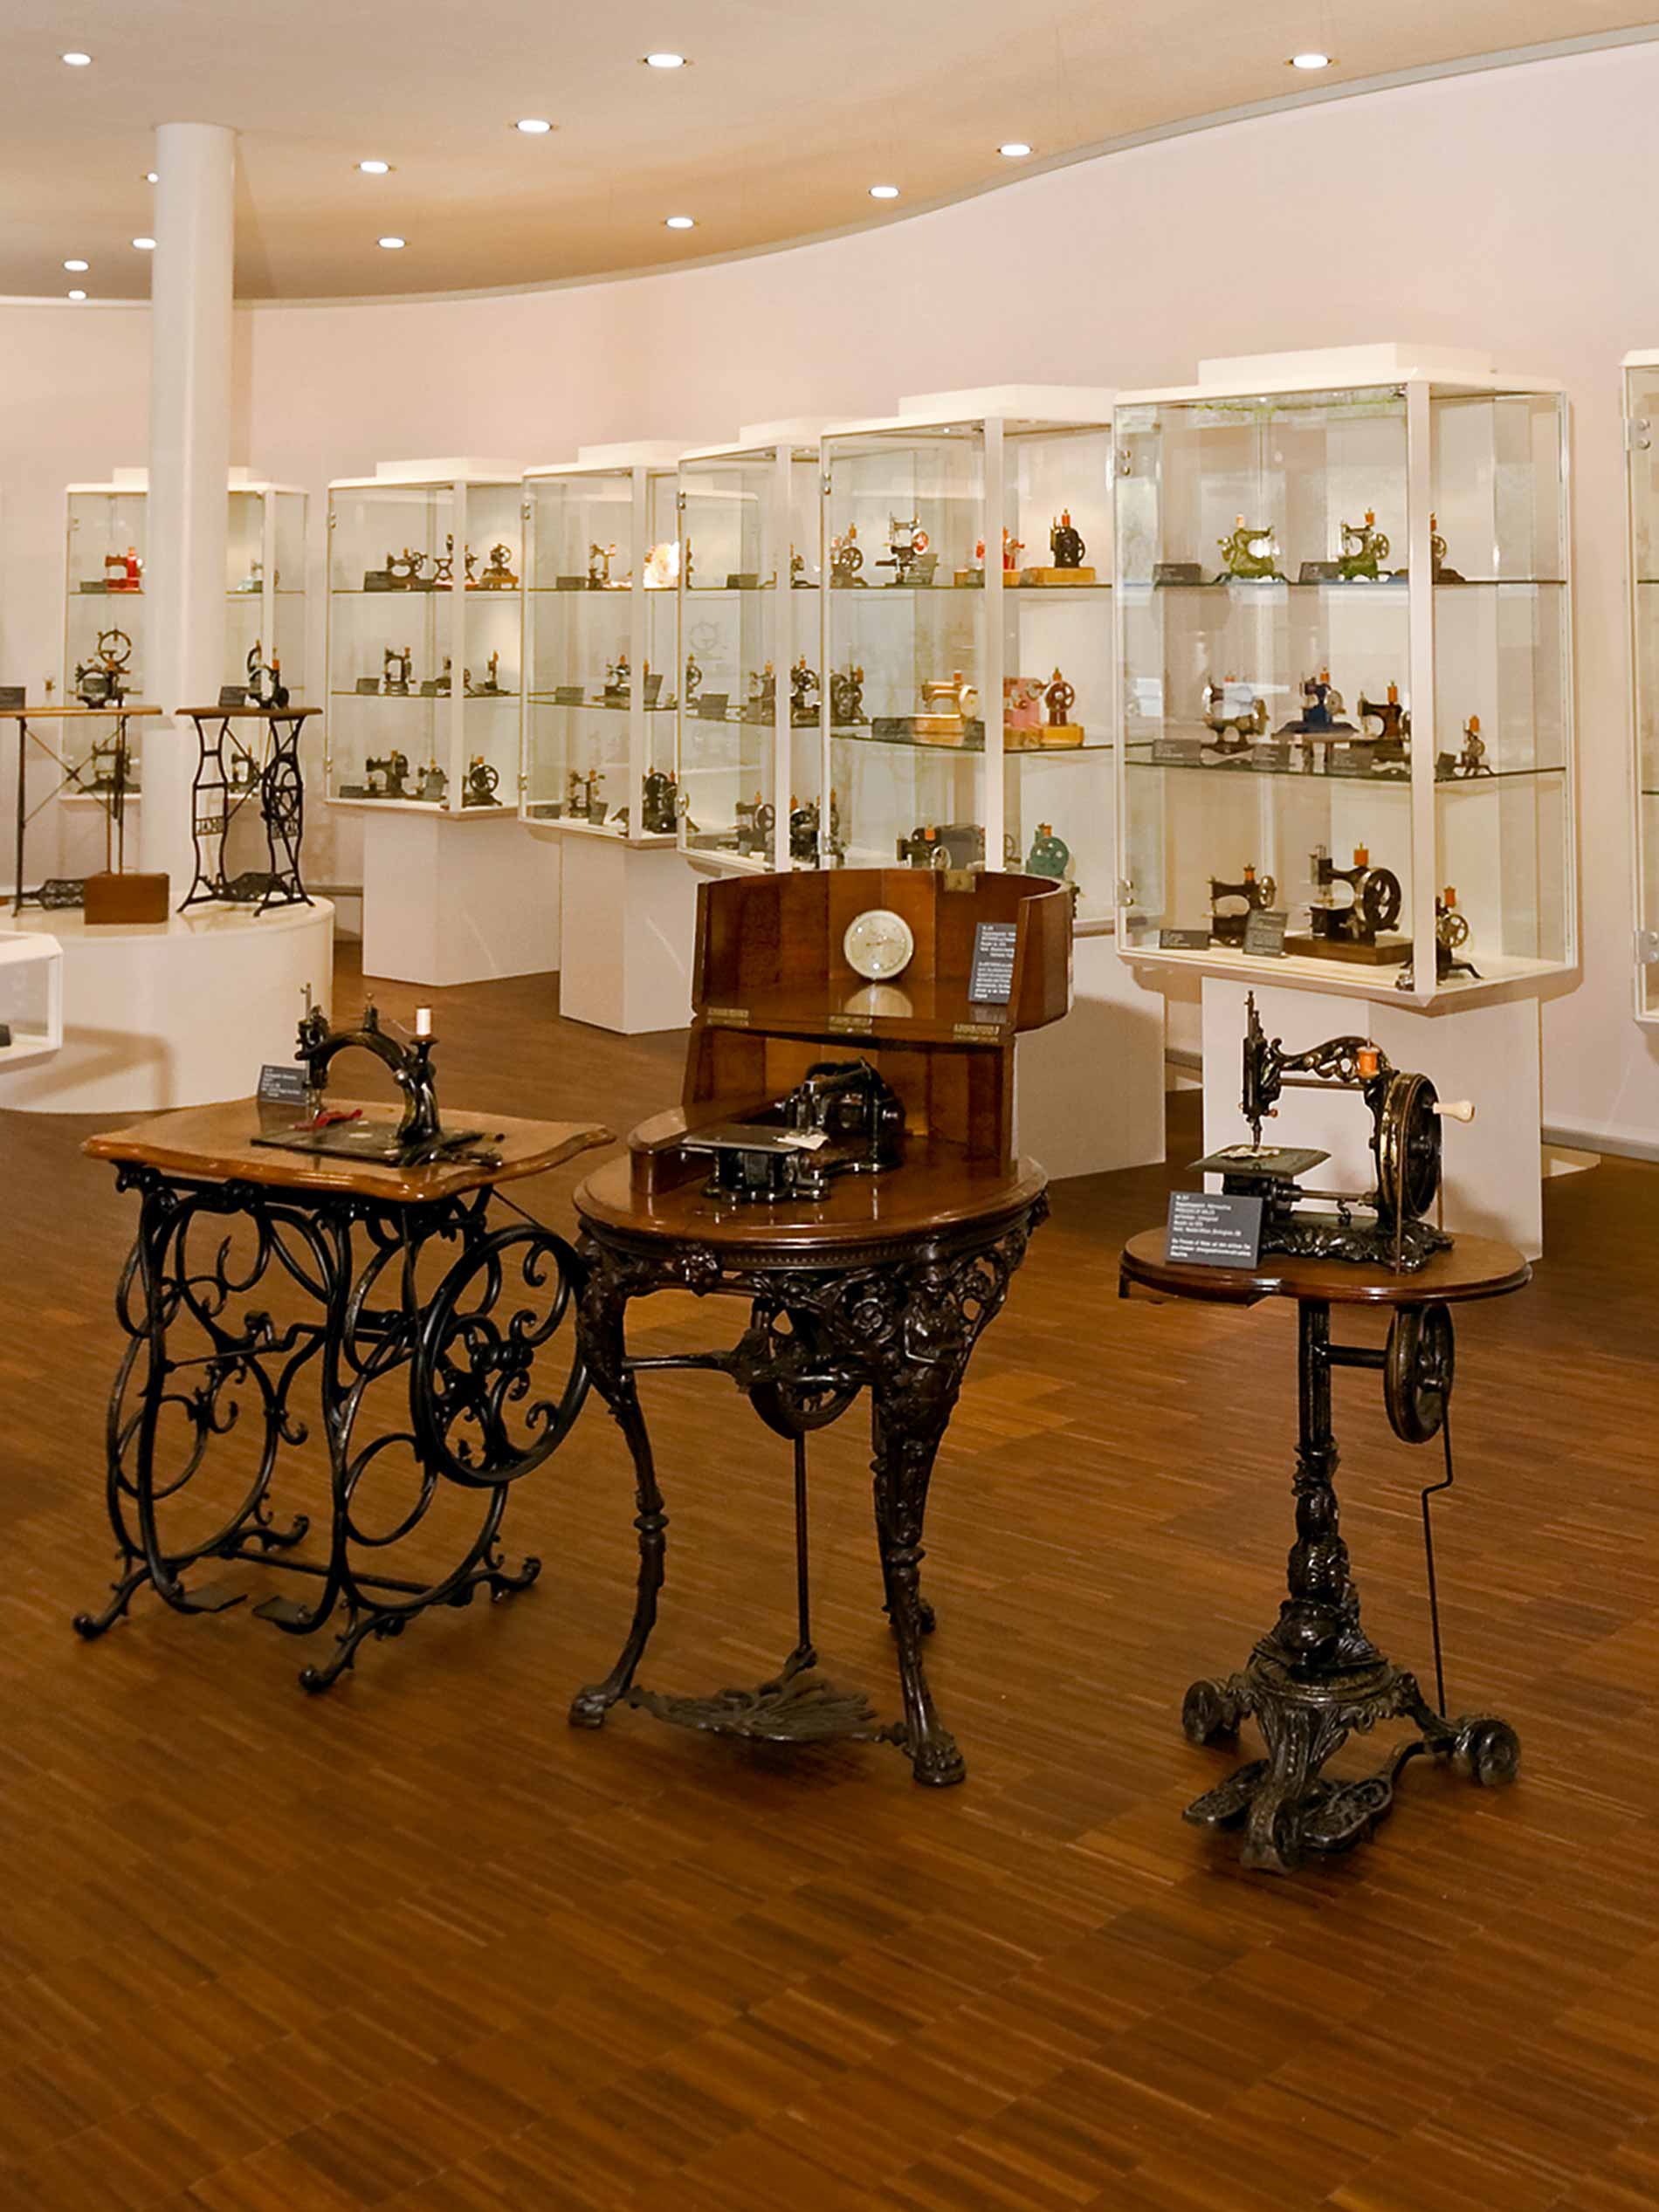 Innenraum des Museums, drei historische Nähmaschinen im Vordergrund und mehrere Glasvitrinen mit Ausstellungsstücken im Hintergrund